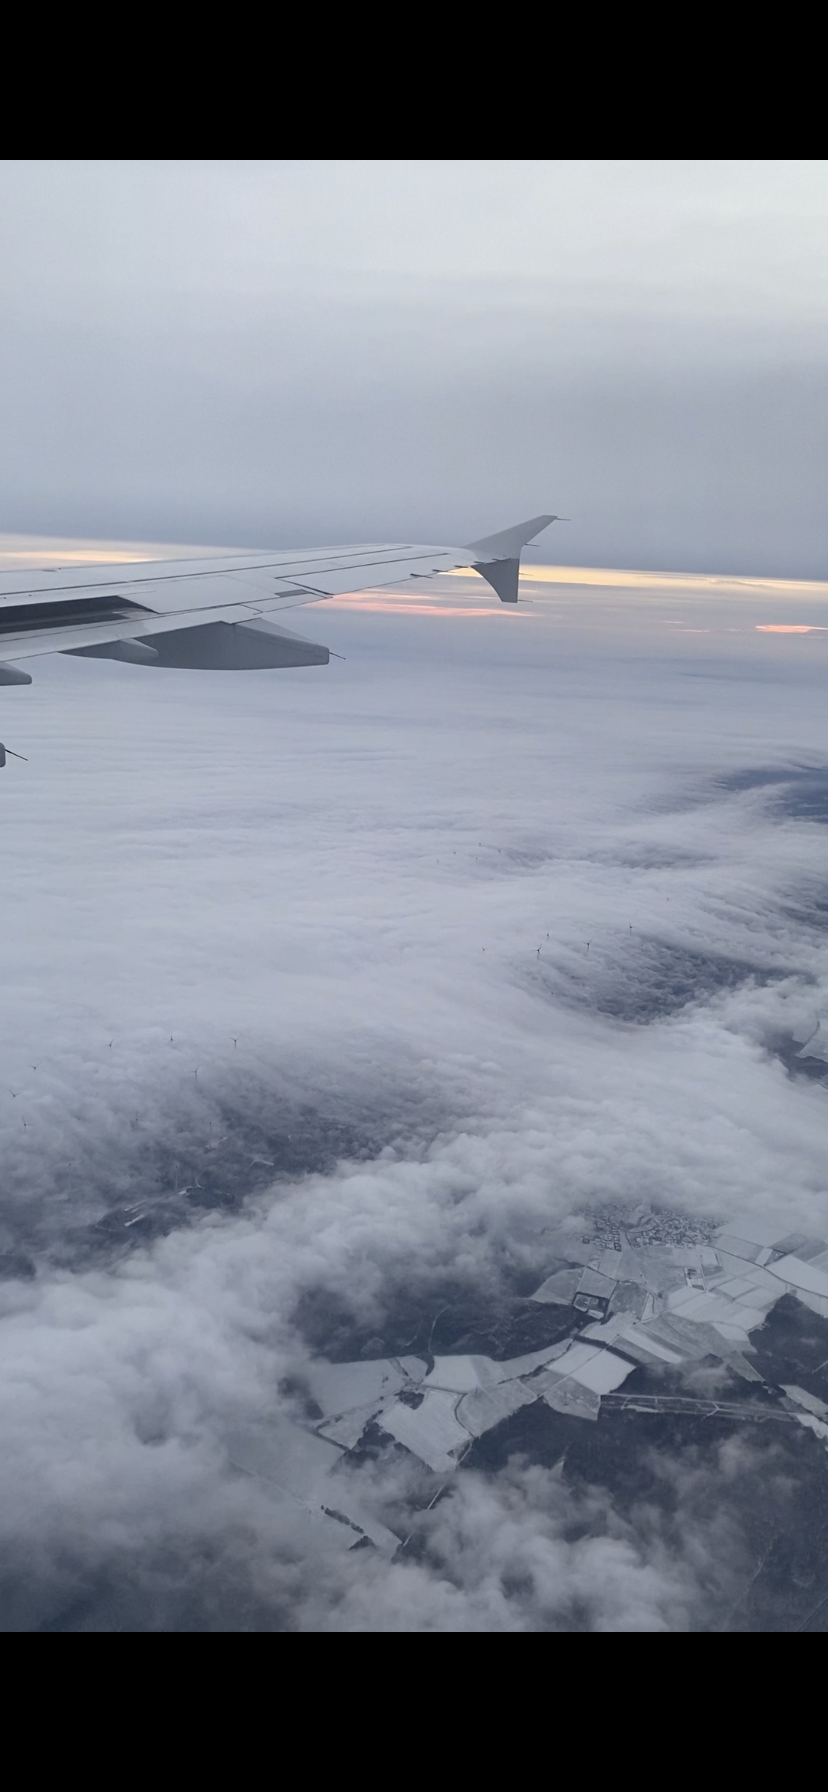 Auf diesem Bild ist ein Flugzeug über den Wolken zu sehen.